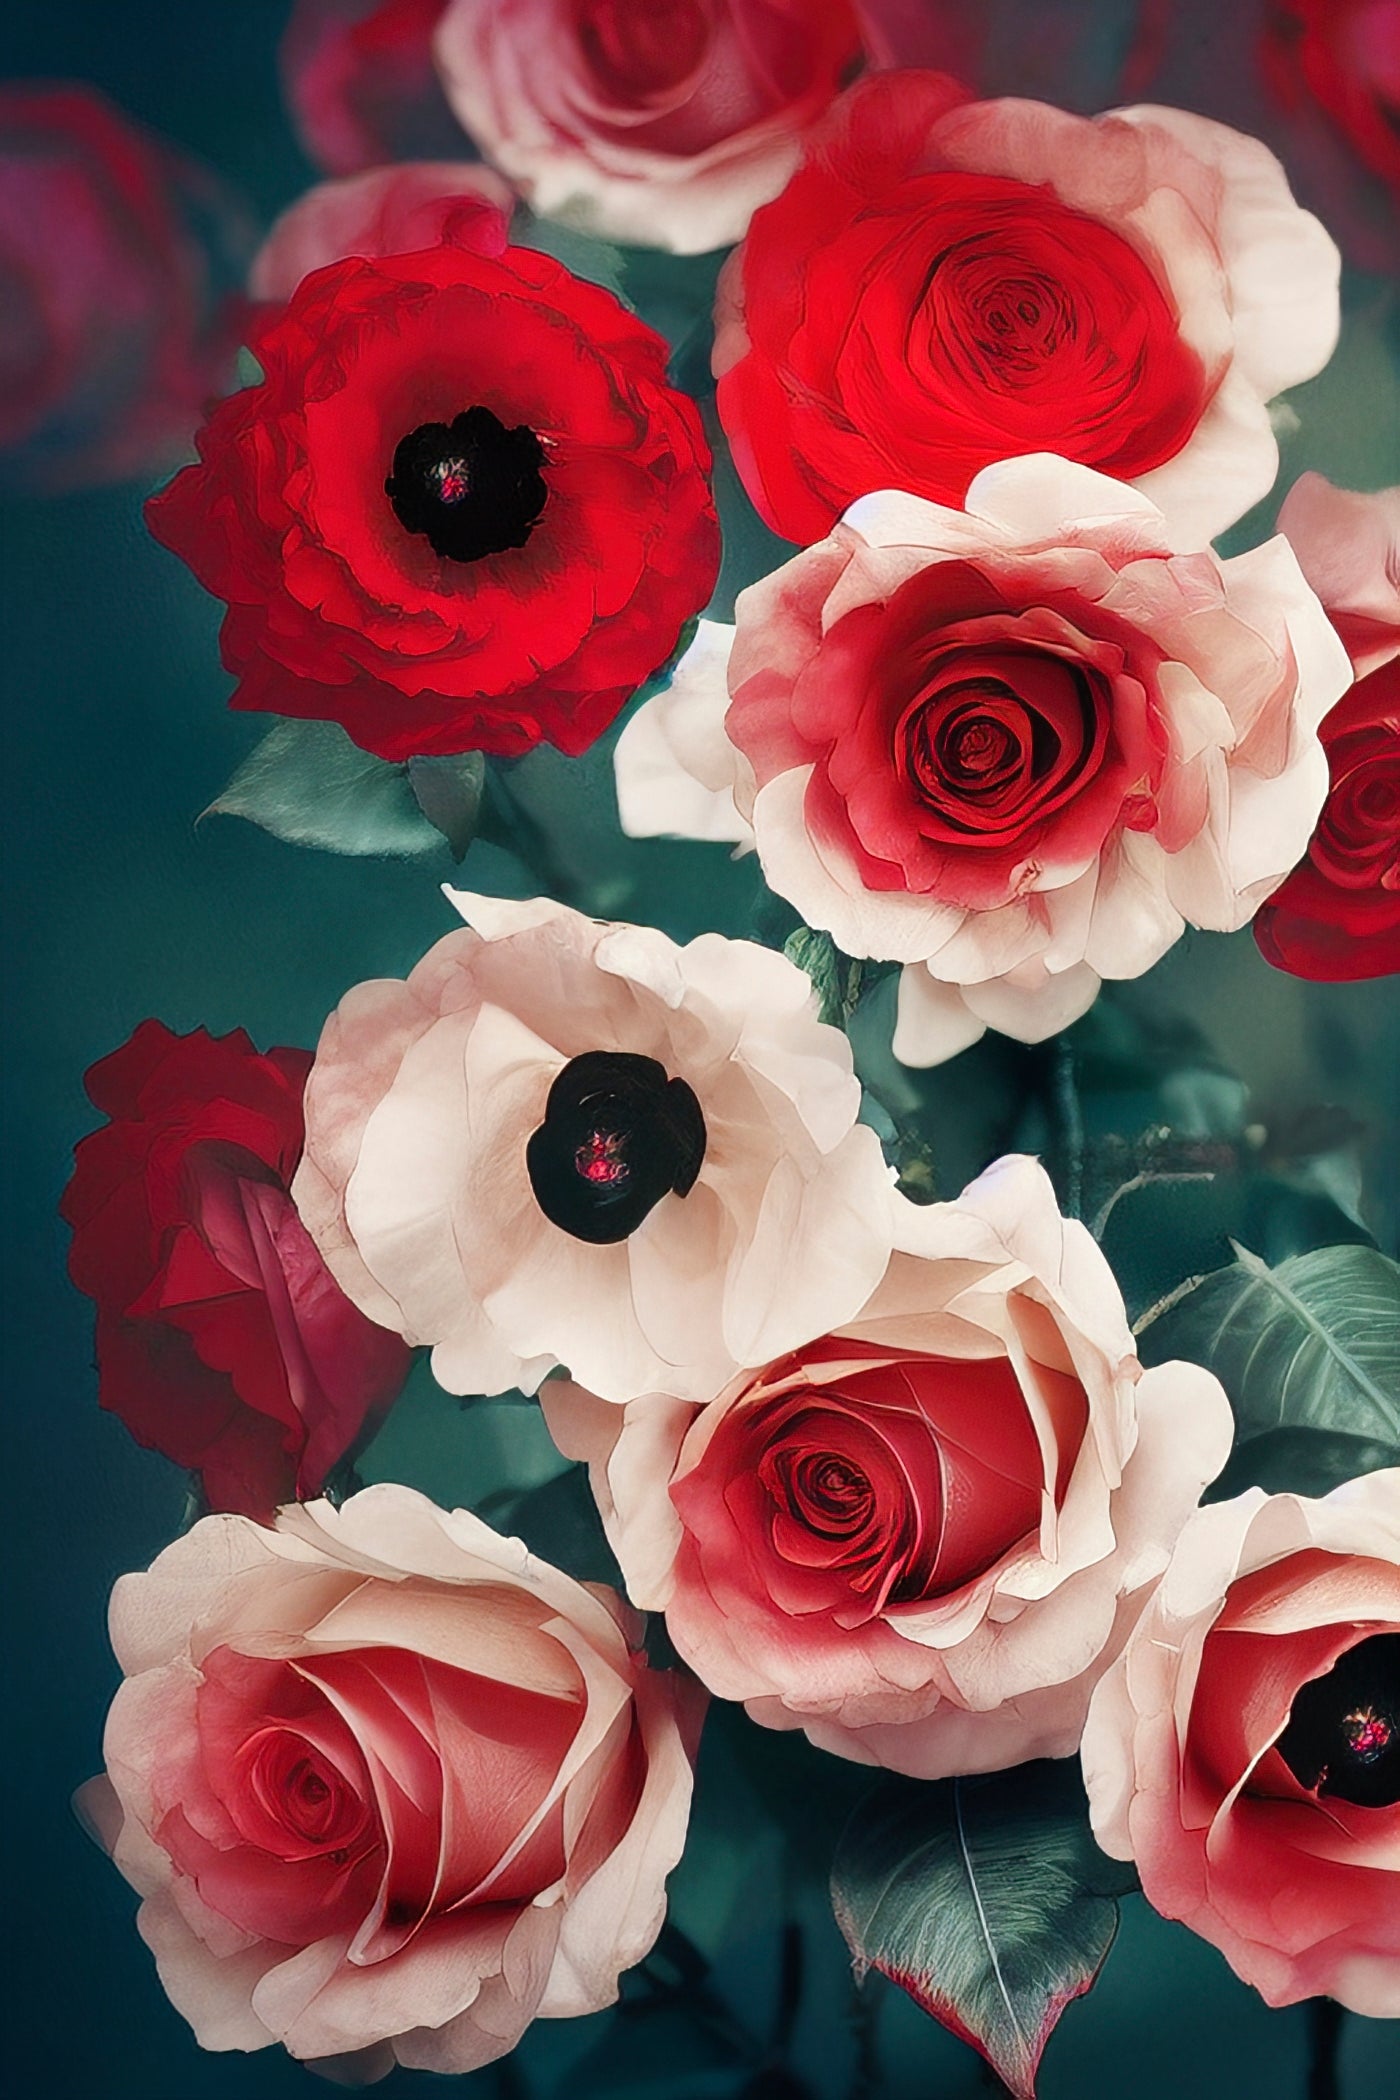 Tableau décoratif, une ode à la beauté et à l'émotion que suscitent les roses, symboles intemporels d'amour. Les roses rouges symbolisent la passion, tandis que les roses blanches représentent pureté et innocence. Dessinées avec délicatesse et aux couleurs vives